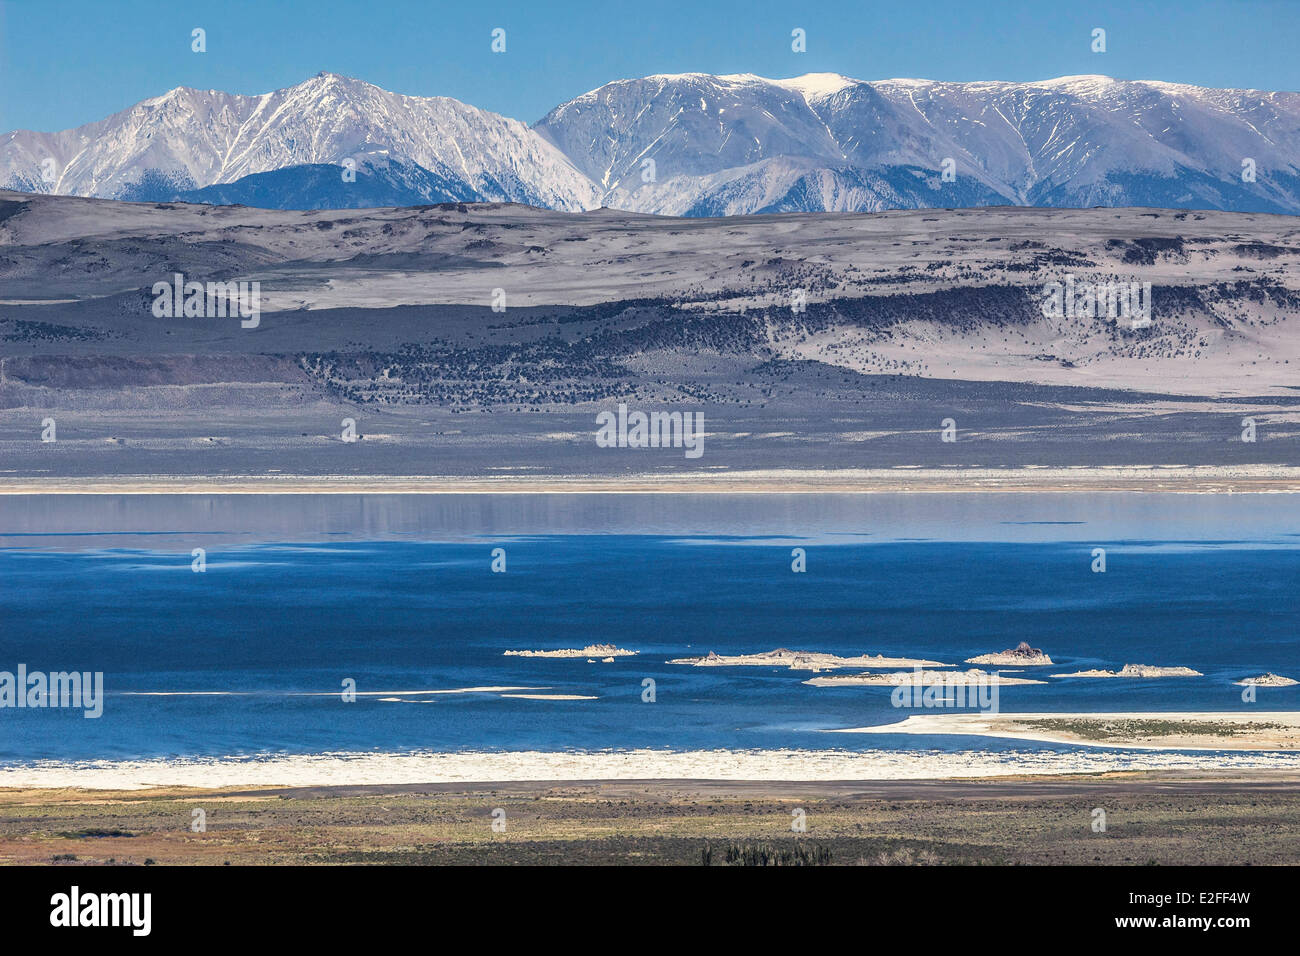 Estados Unidos California oriental del Lago Mono, Sierra Nevada y las Montañas Blancas en el fondo con el límite máximo de pico Foto de stock